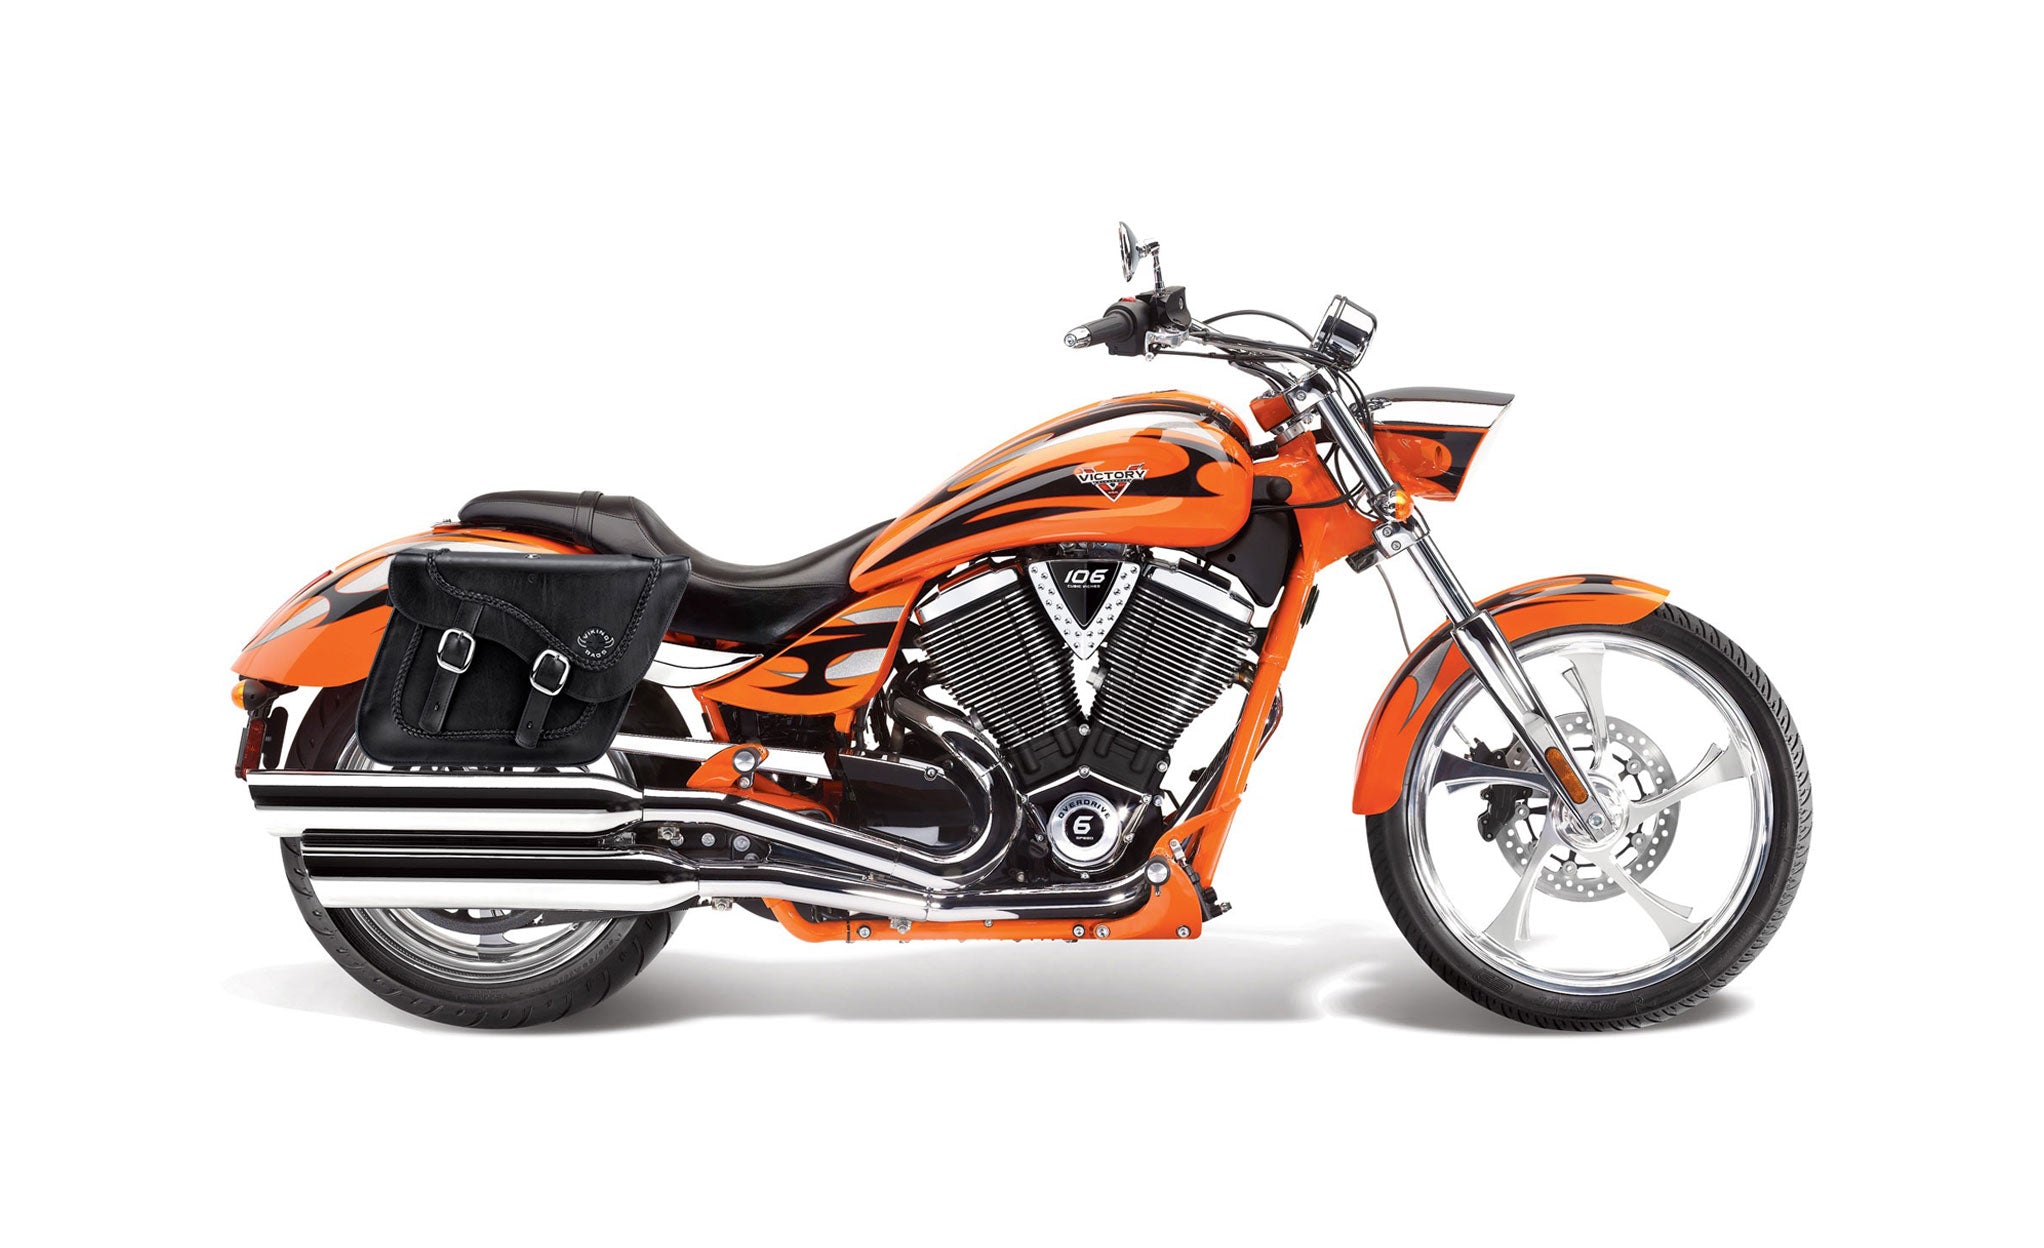 Viking Americano Victory Jackpot Braided Large Leather Motorcycle Saddlebags on Bike Photo @expand